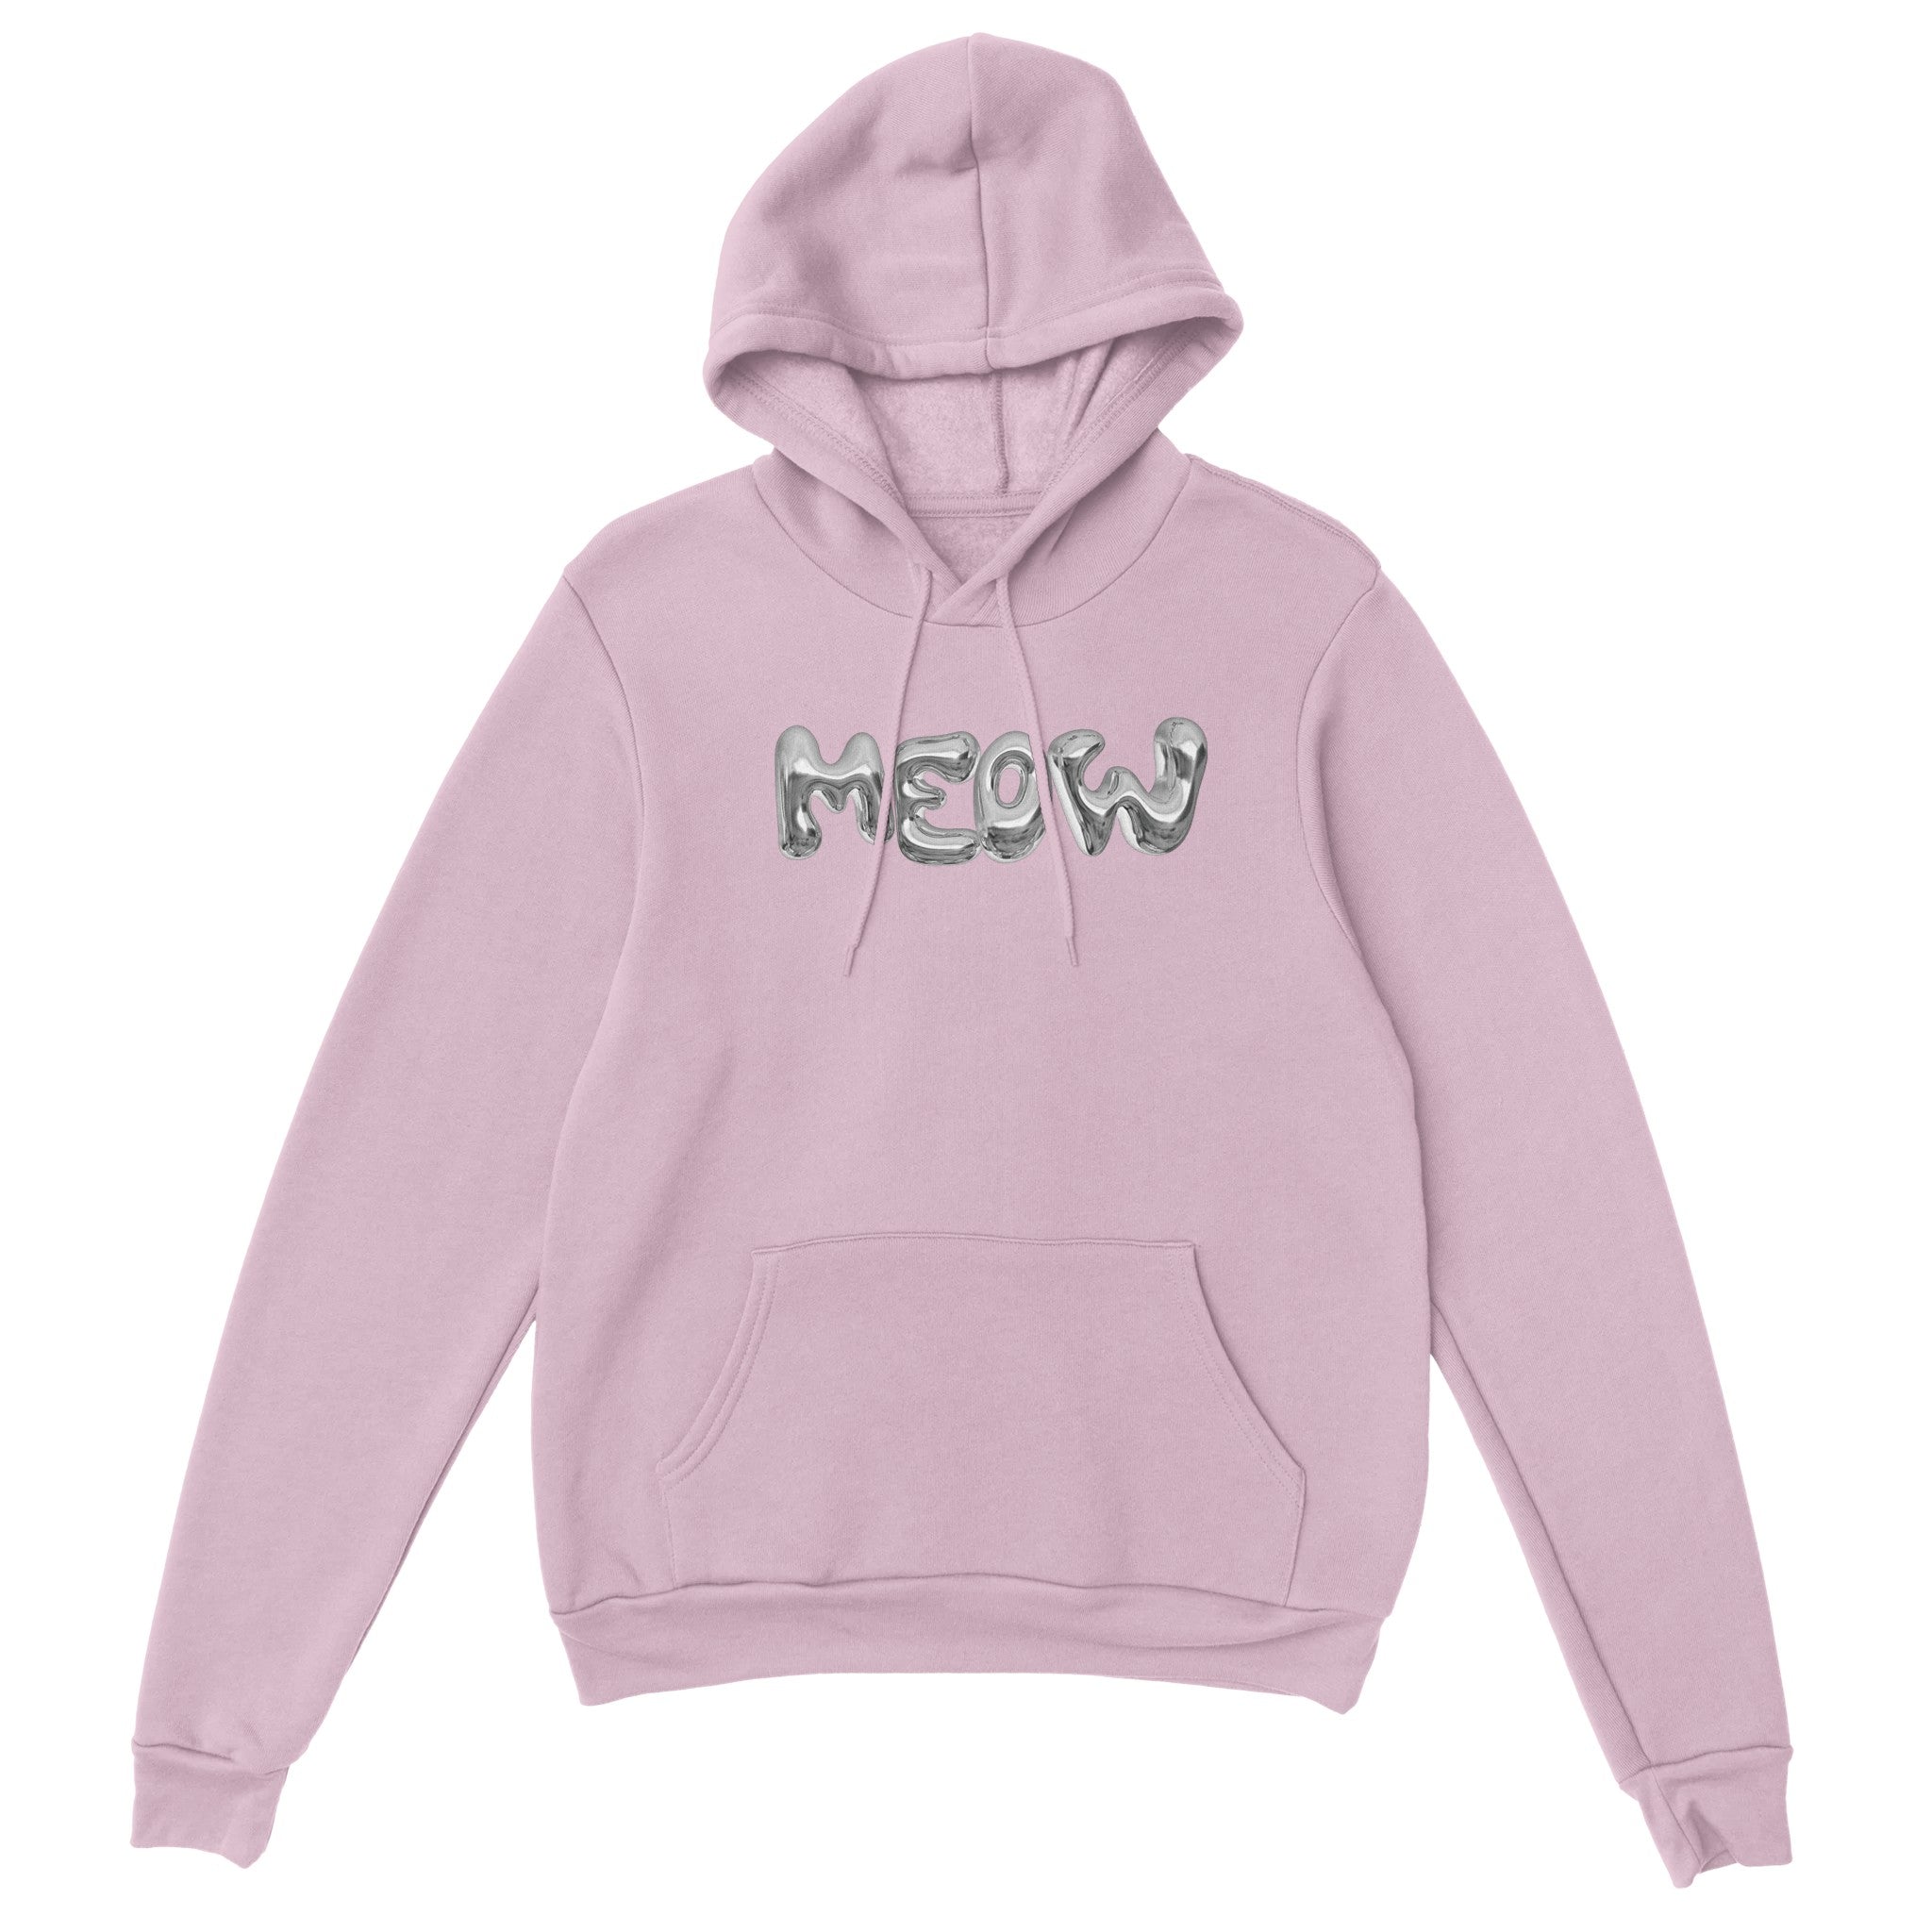 'Meow' hoodie - In Print We Trust